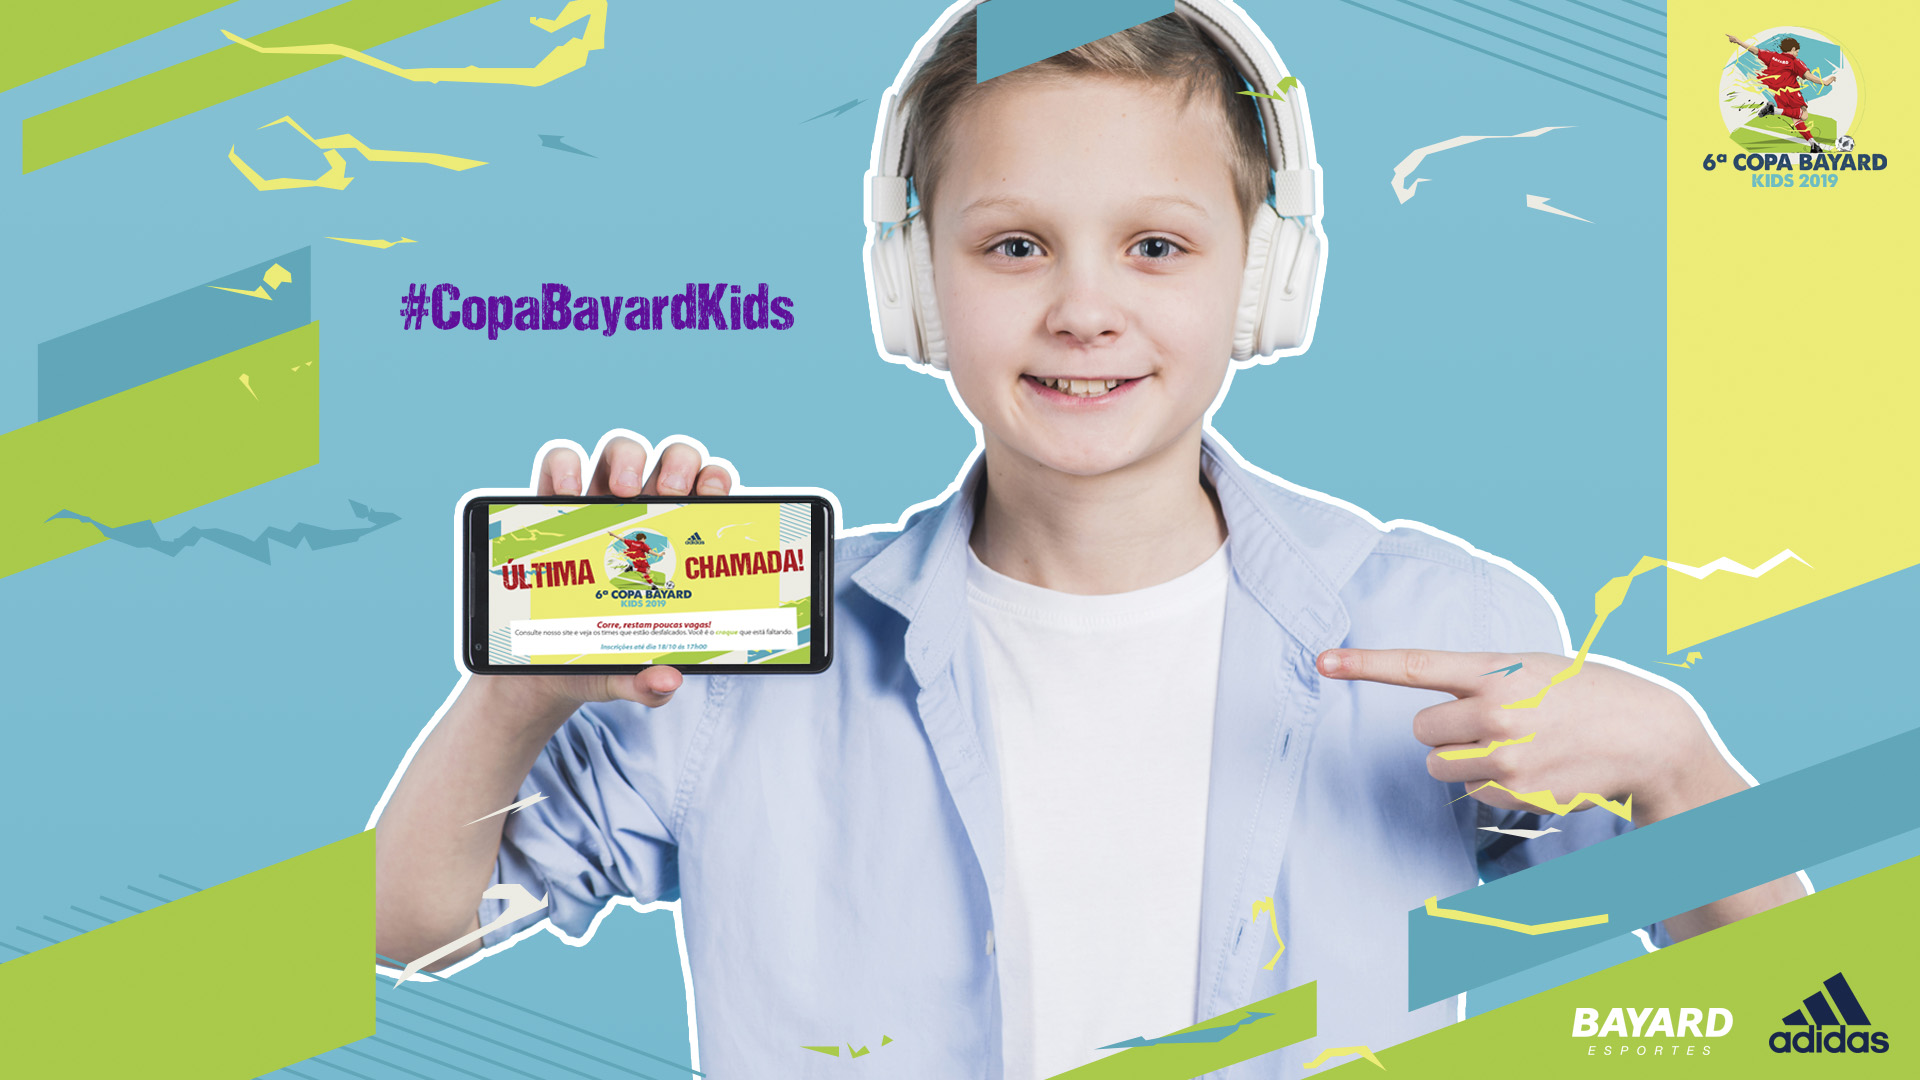 Imagem do key visual da 6ª Copa Bayard Kids - Adidas. Garoto com fones de ouvido brancos segurando e apontando para um celular que na tela tem a comunicação do evento. Hashtag #CopaBayardKids.